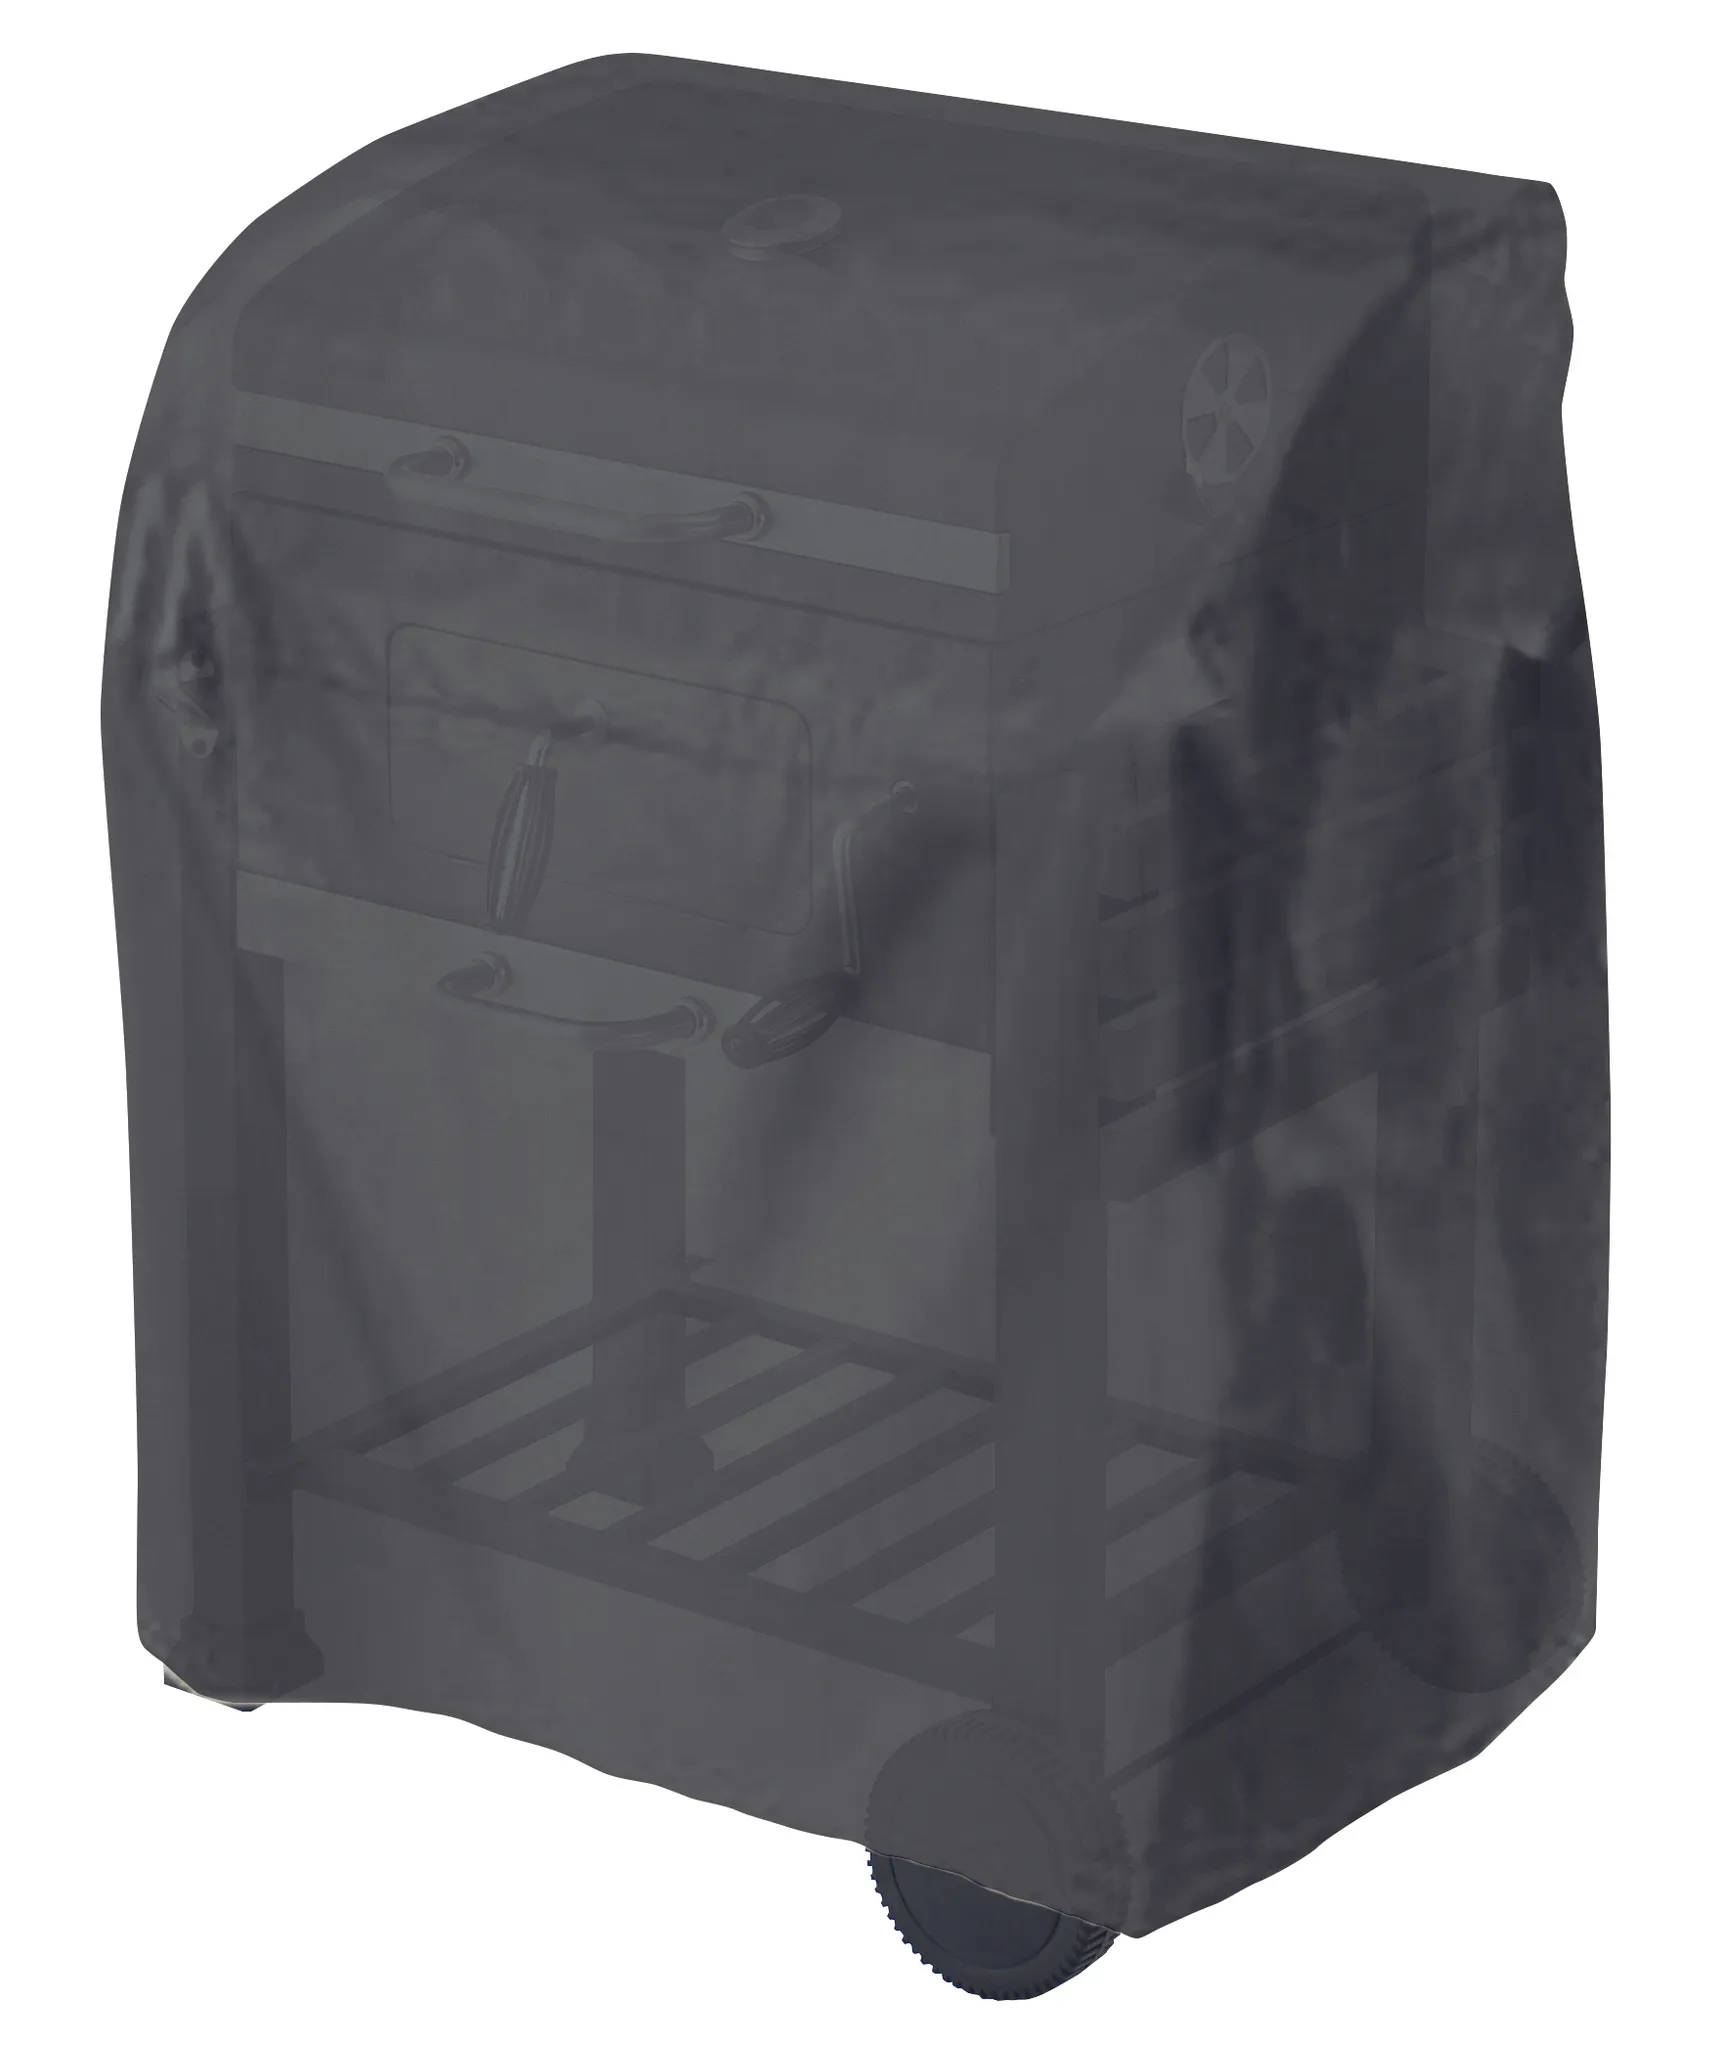 Grillwagen Tepro-Grillschutzhülle-Universal schwarz; 8100 für Abdeckhaube klein, -